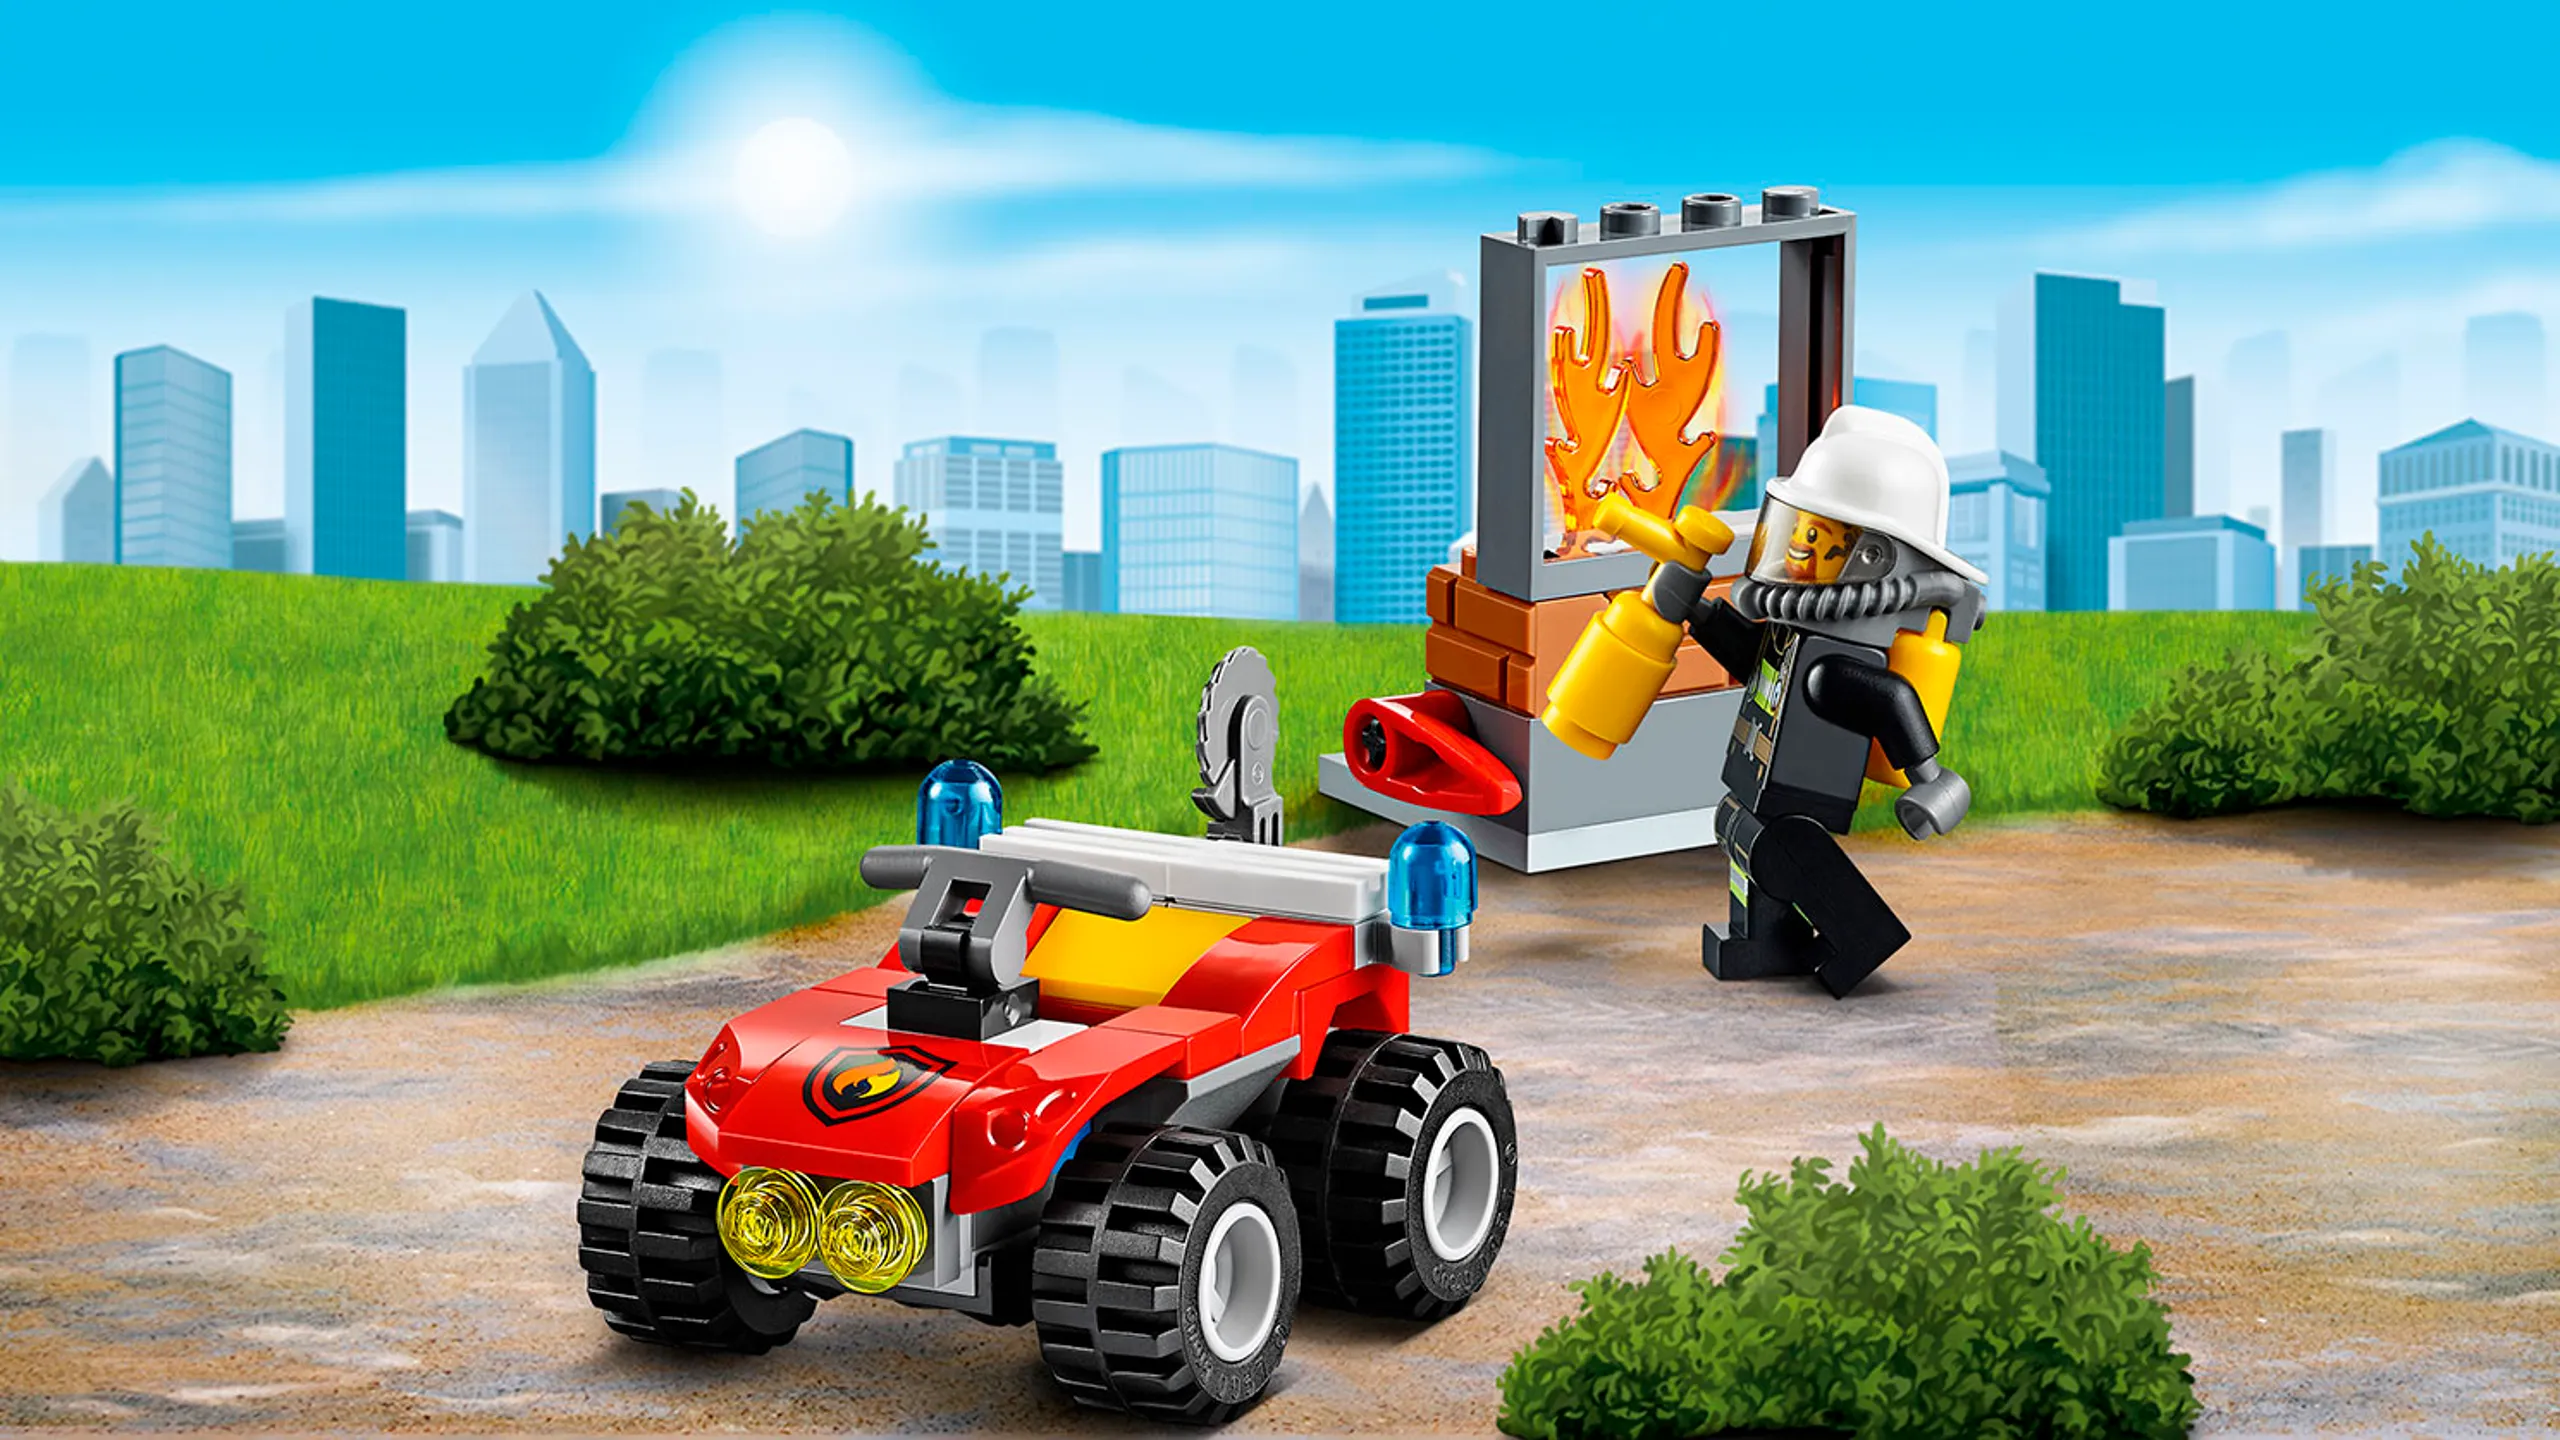 LEGO City Feuerwehrmann-Minifigur beim Löschen – Feuerwehr-Buggy 60105